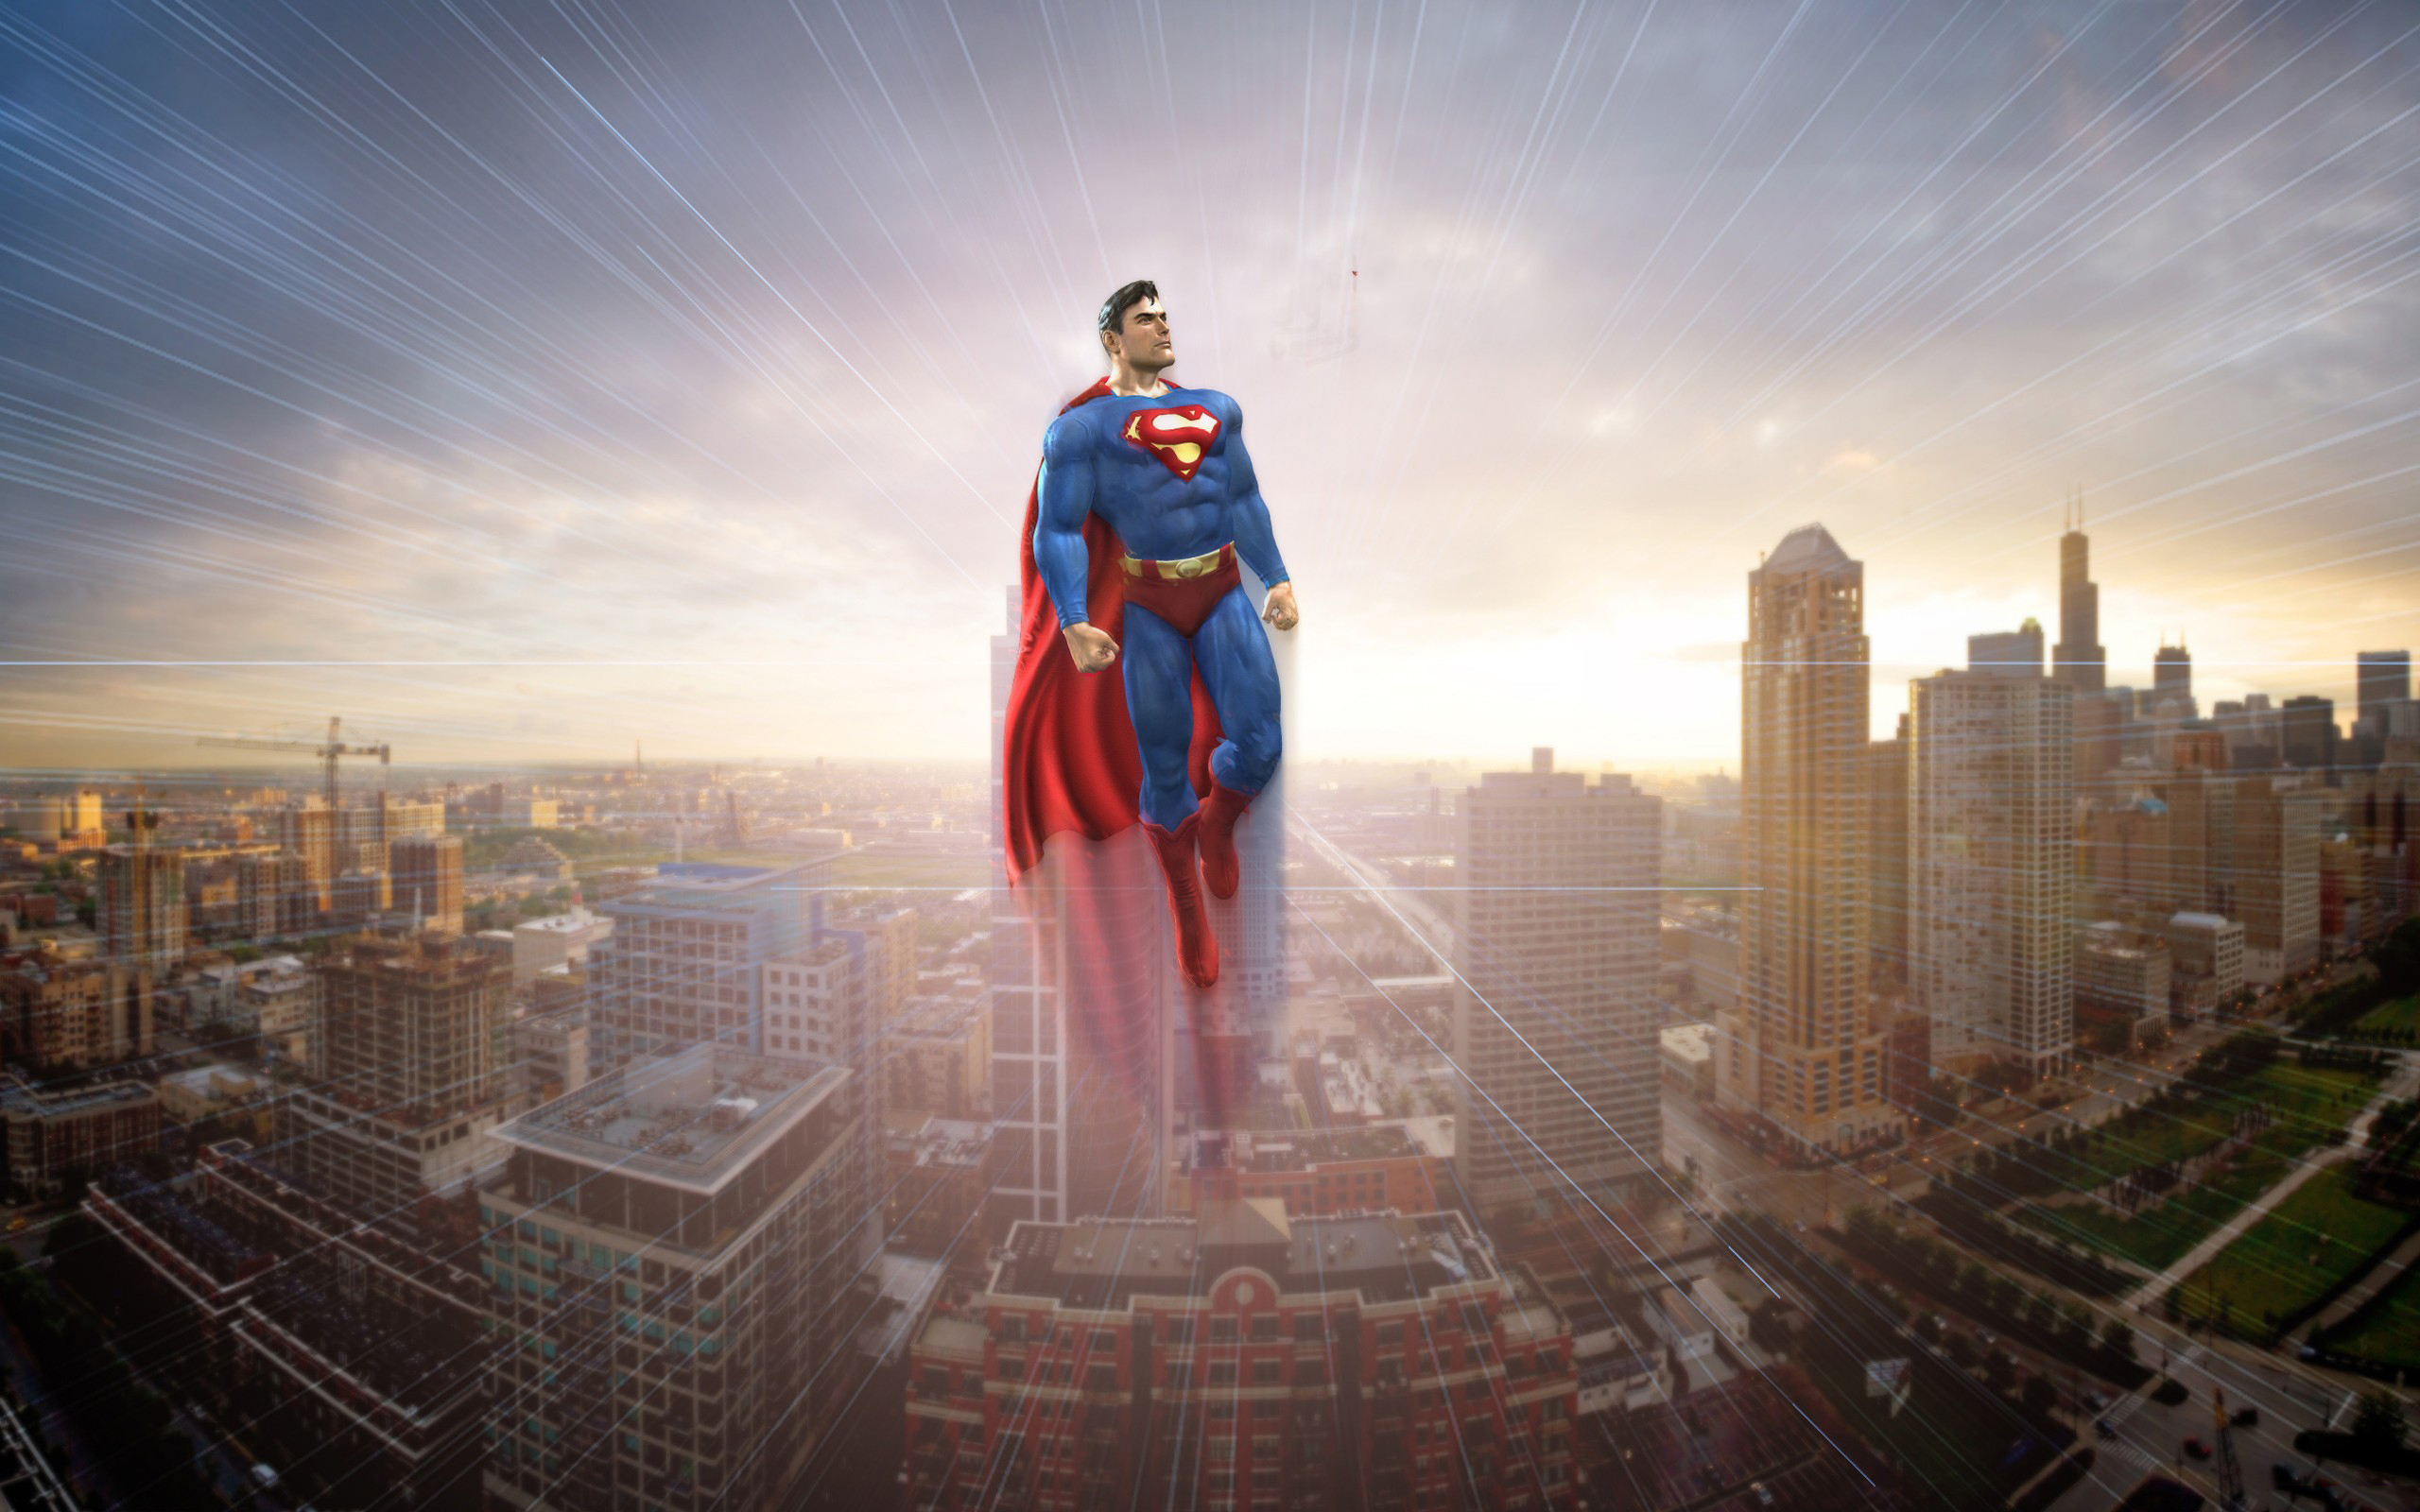 Superhero has. Супермен. Супергерой. Супергерой в городе. Супермен на фоне города.